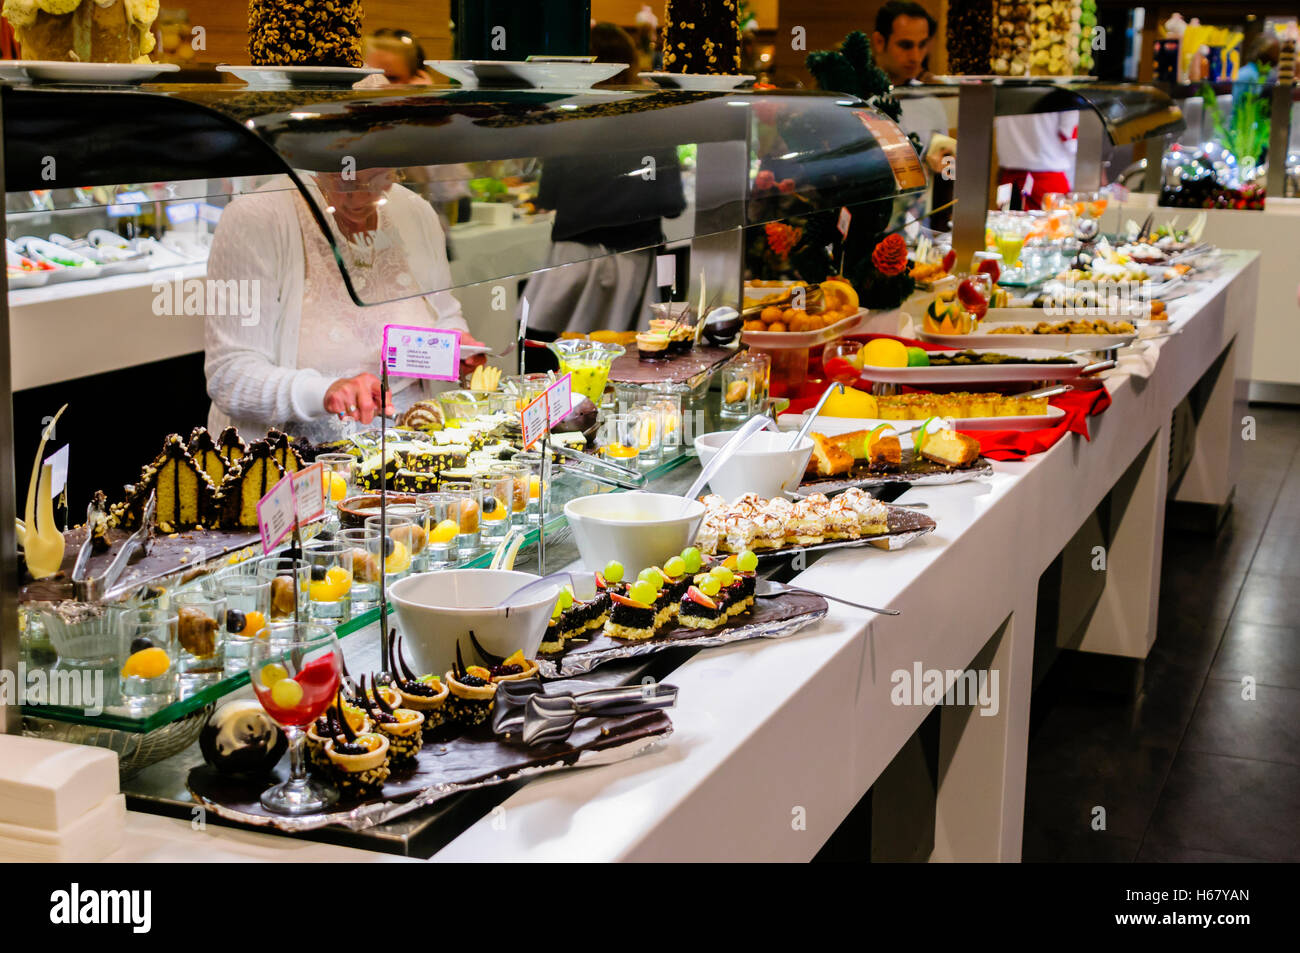 Dessets consistente di torte, mousse e frutta presso il buffet del ristorante dell'albergo Foto Stock